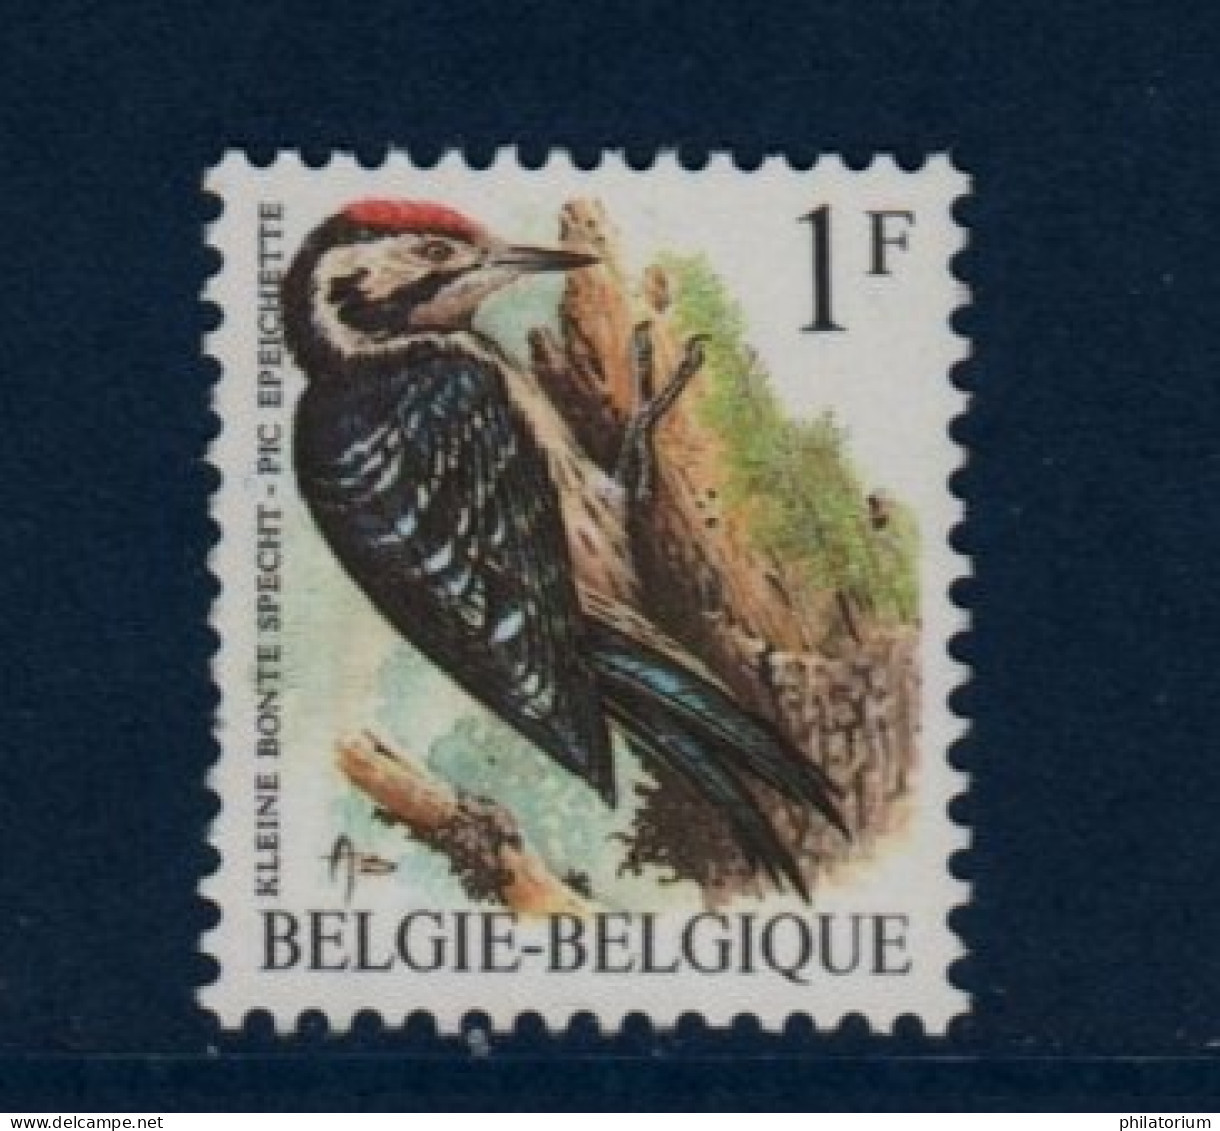 Belgique België, **, Yv 2349, Mi 2401x, SG 2845, Pic épeichette, - 1985-.. Vogels (Buzin)